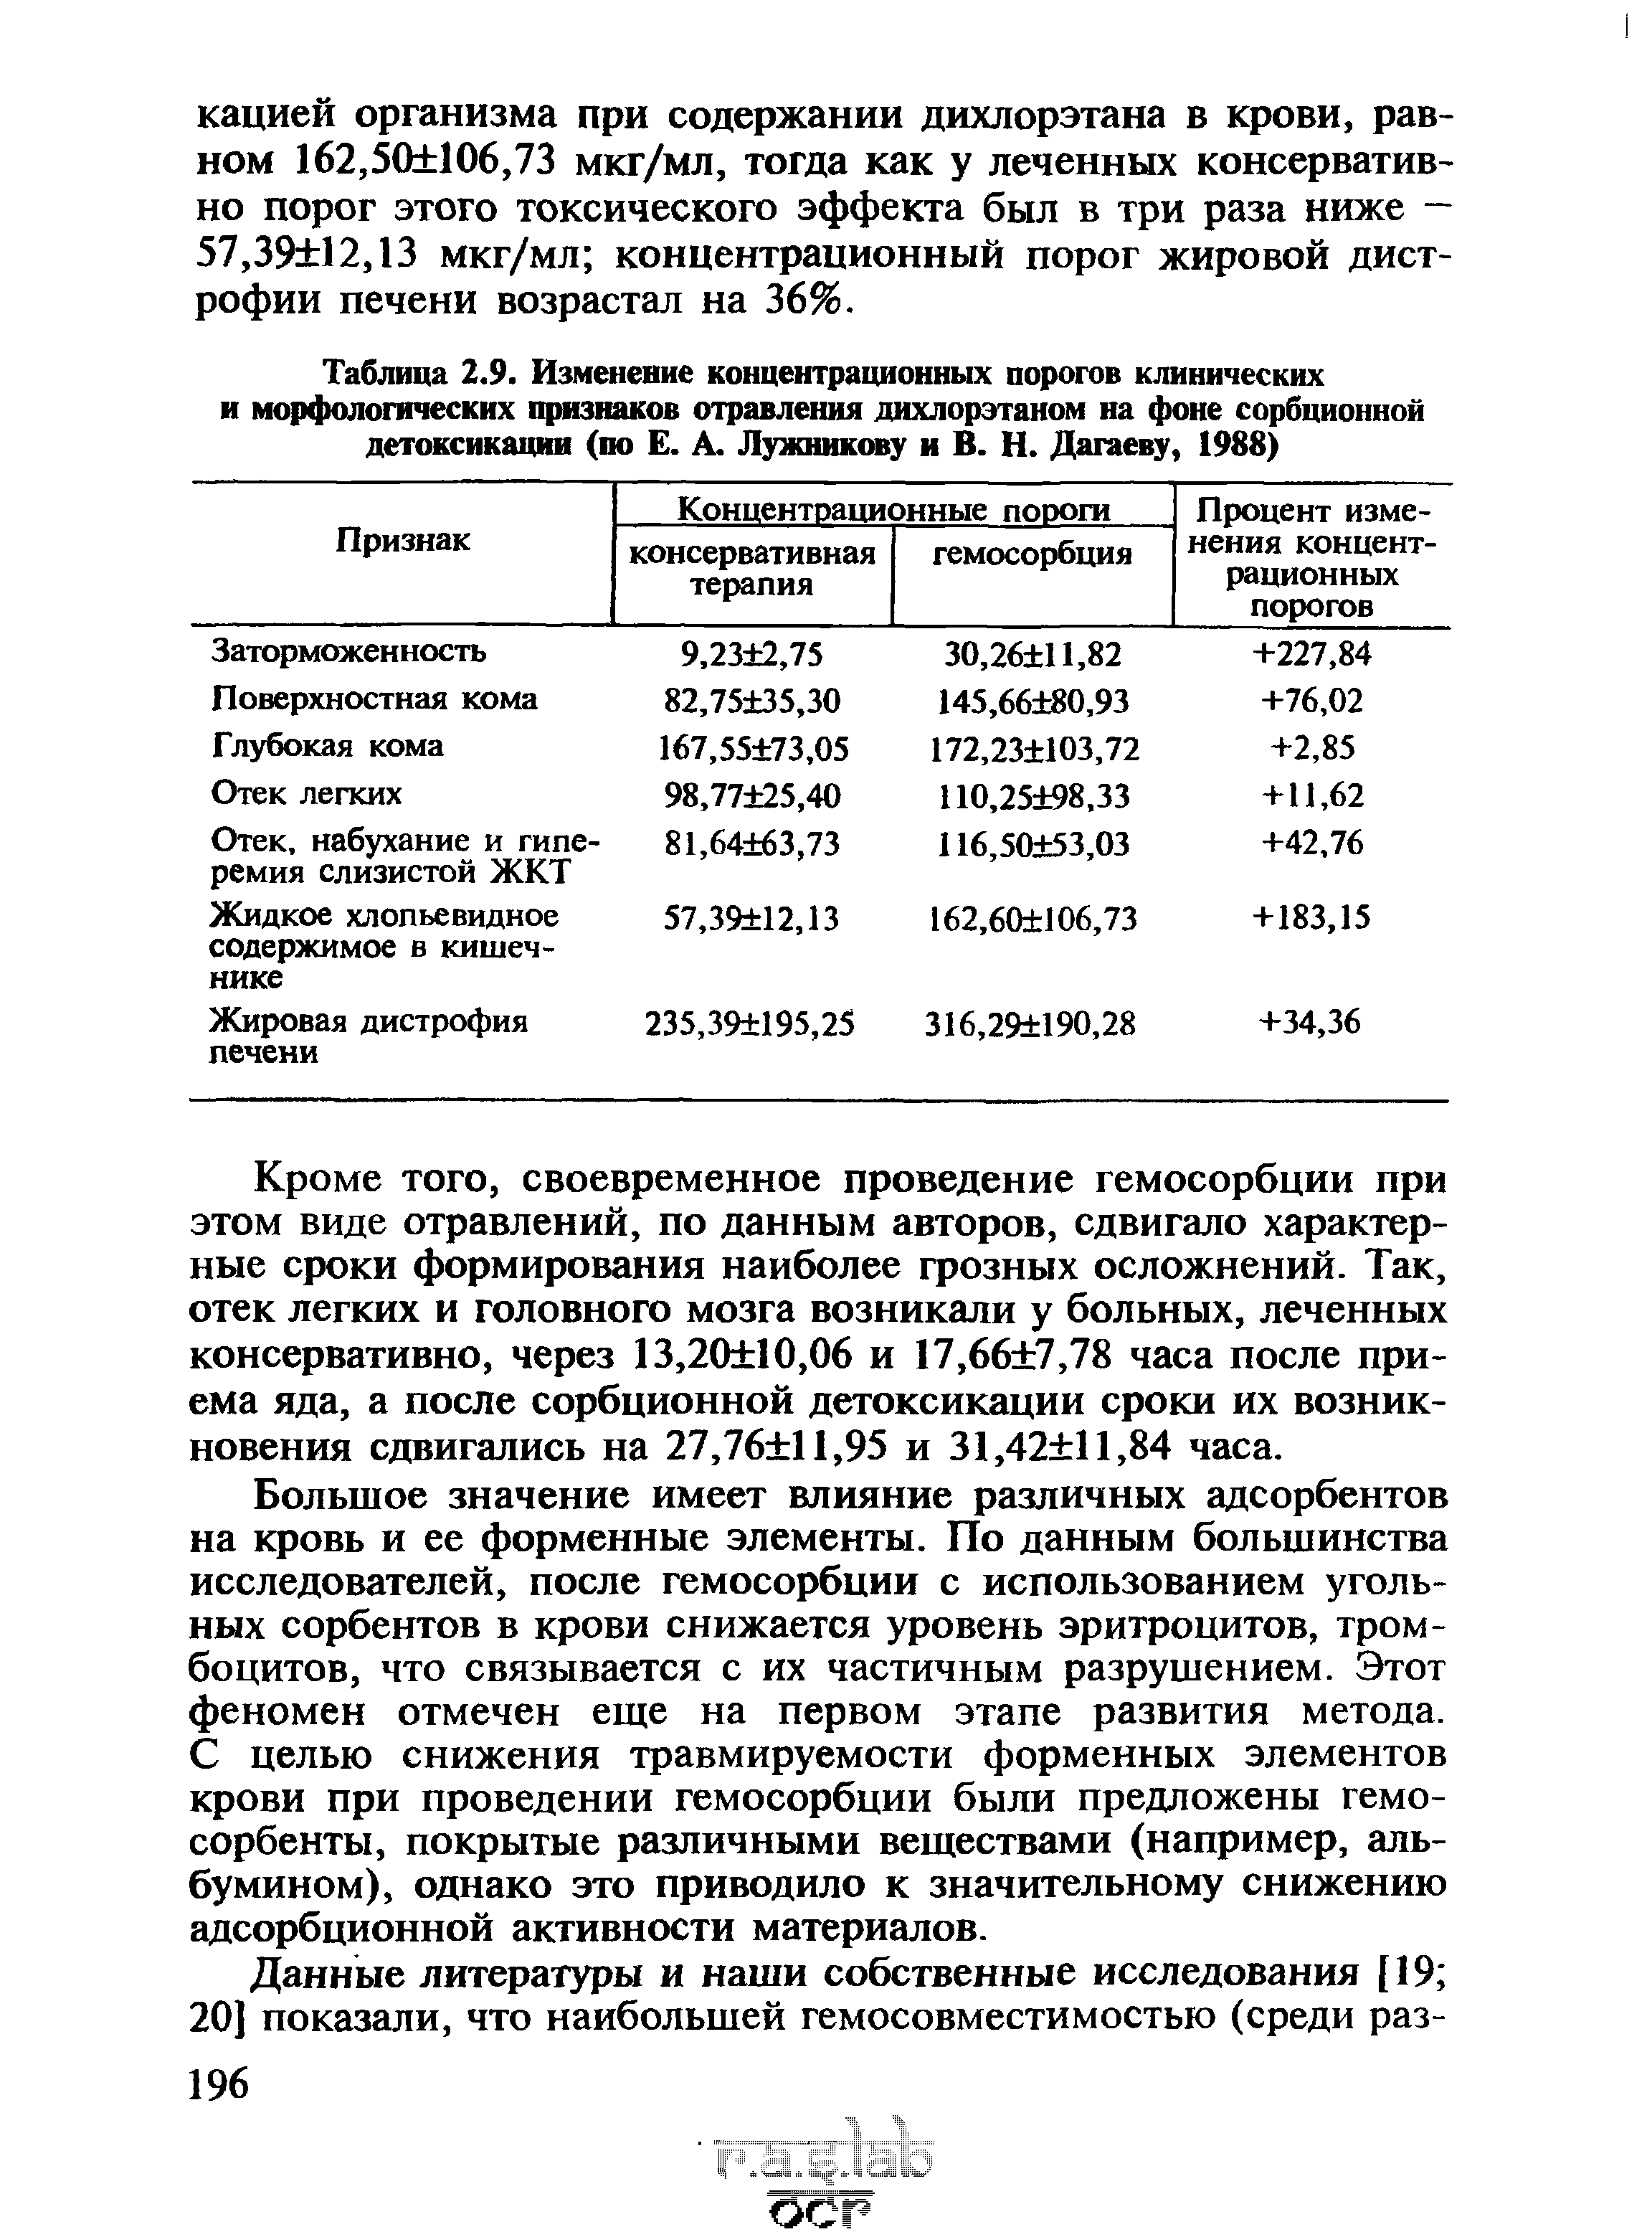 Таблица 2.9. Изменение концентрационных порогов клинических и морфологических признаков отравления дихлорэтаном на фоне сорбционной детоксикации (по Е. А. Лужникову и В. Н. Дагаеву, 1988)...